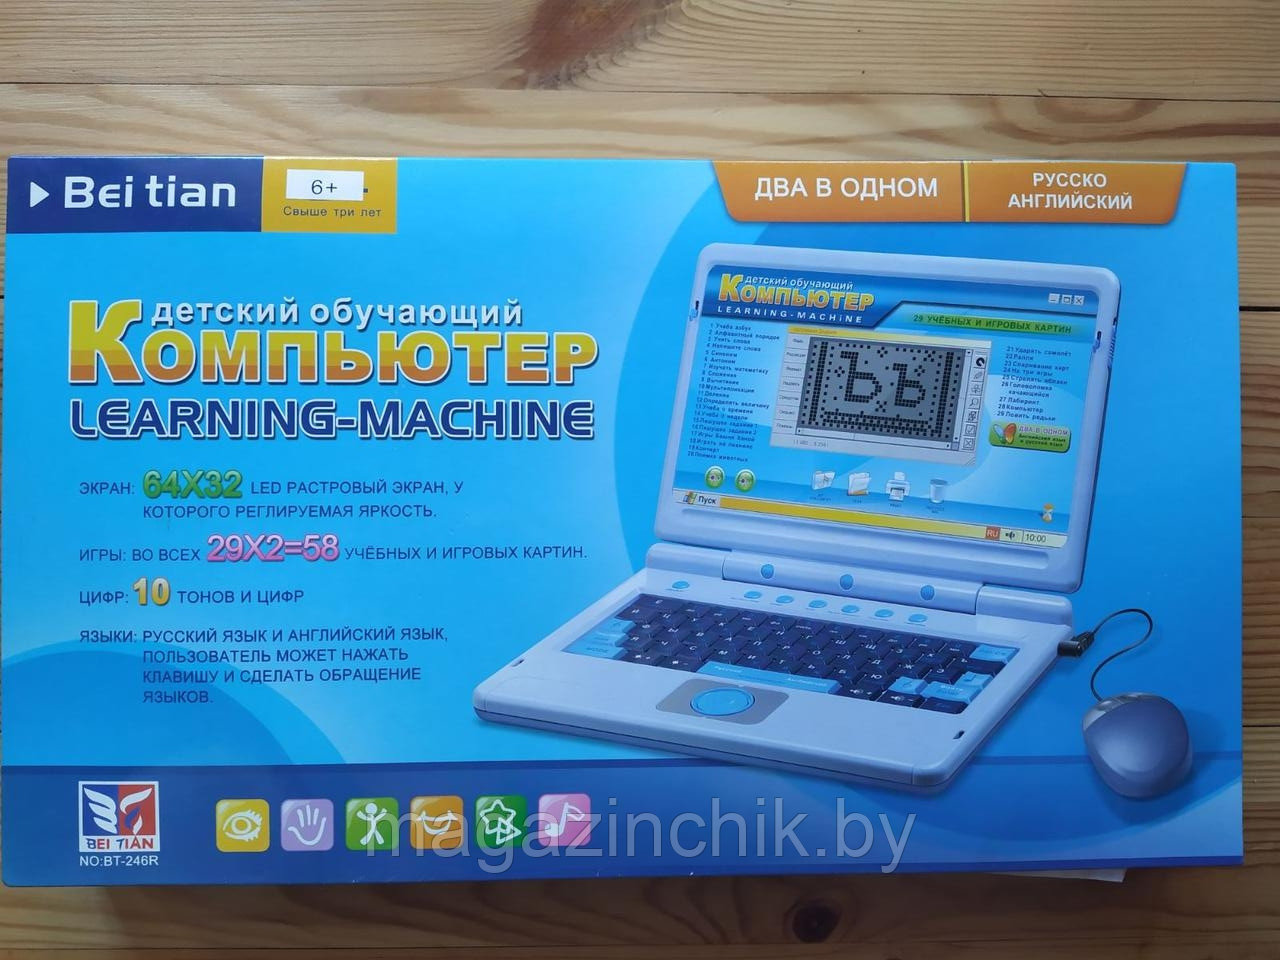 Детский обучающий ноутбук русско-английский голубой, с мышкой, 58 функций 246R